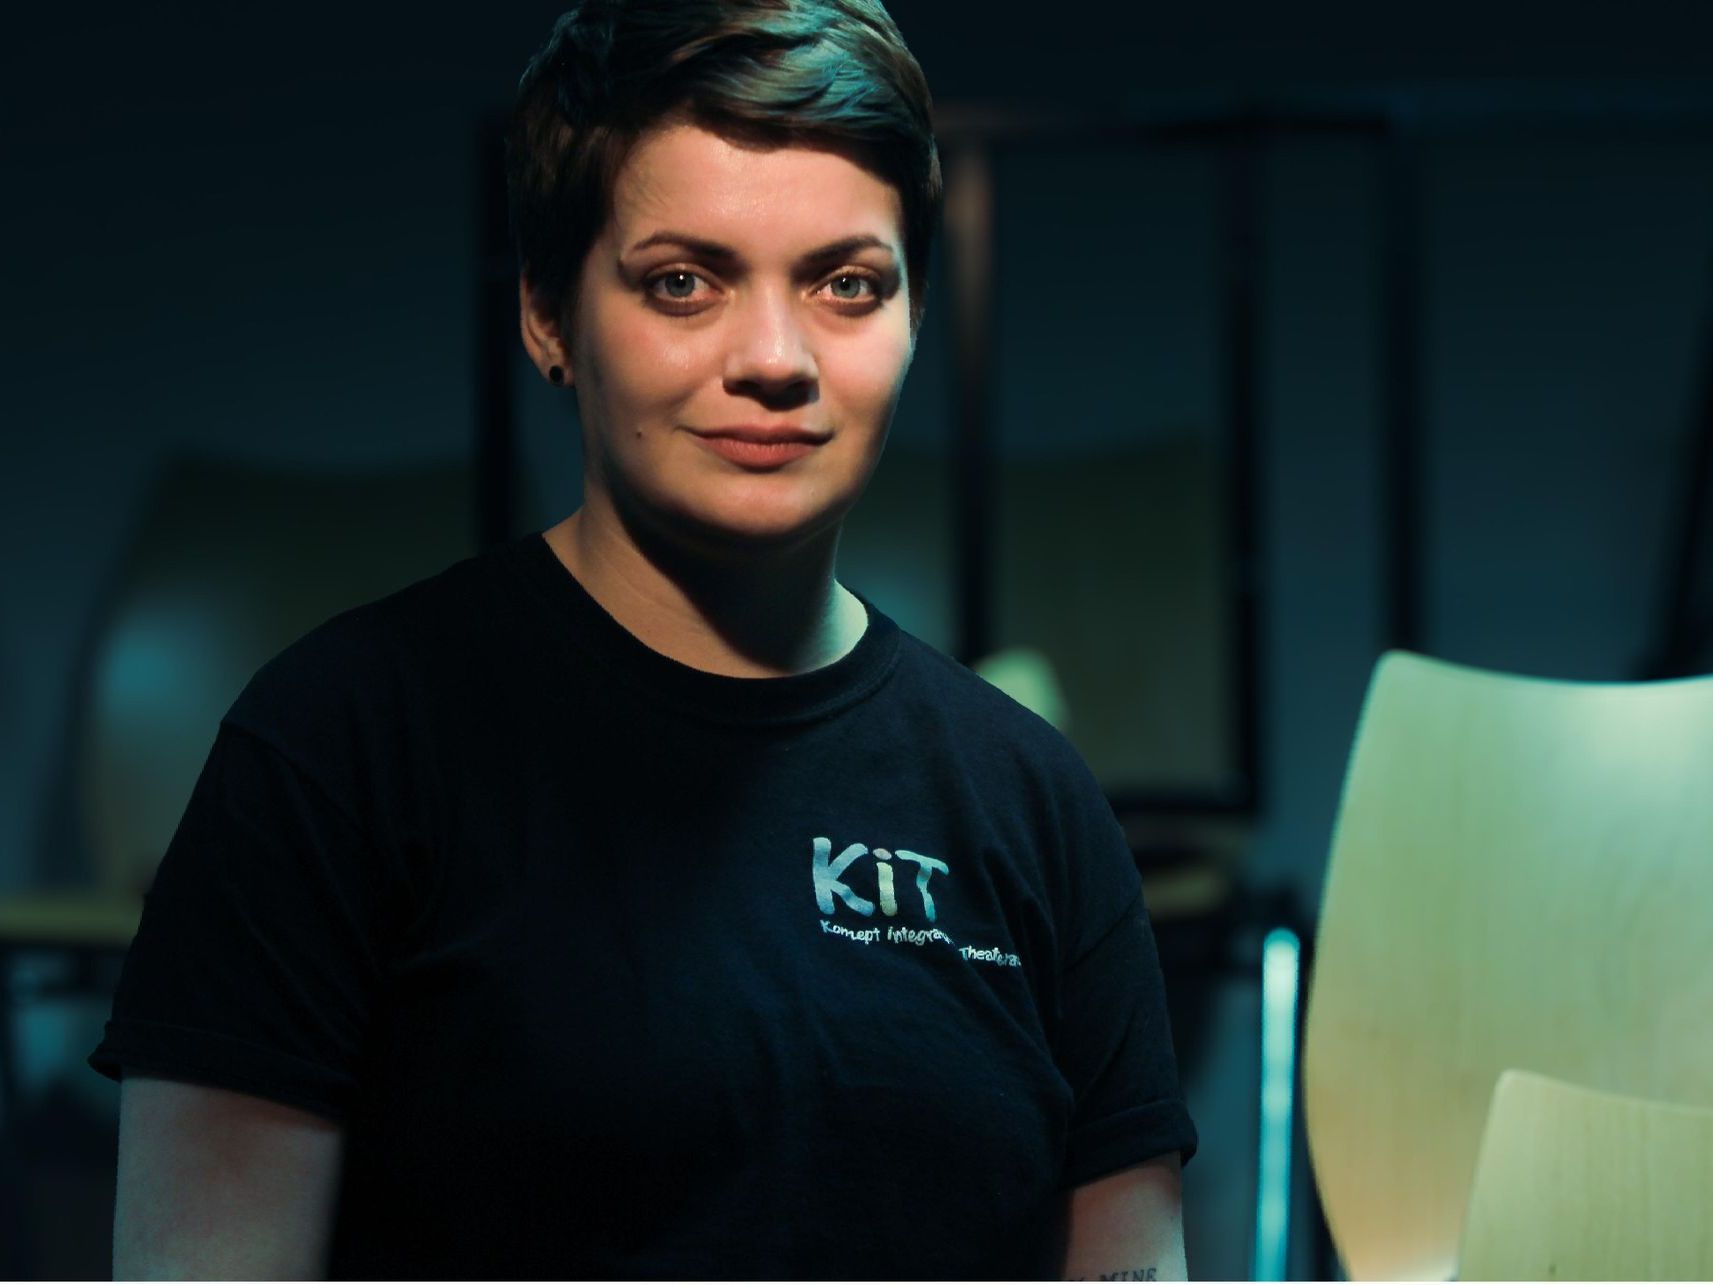 Porträt von Lea Schnalke, schwarzes T-Shirt mit Schriftzug KIT - Konzept integrative Theaterarbeit, kurze dunkle Haare. Im Hintergrund sieht man die Sitzreihen der Bühne der Integrativen Theaterwerksatt.